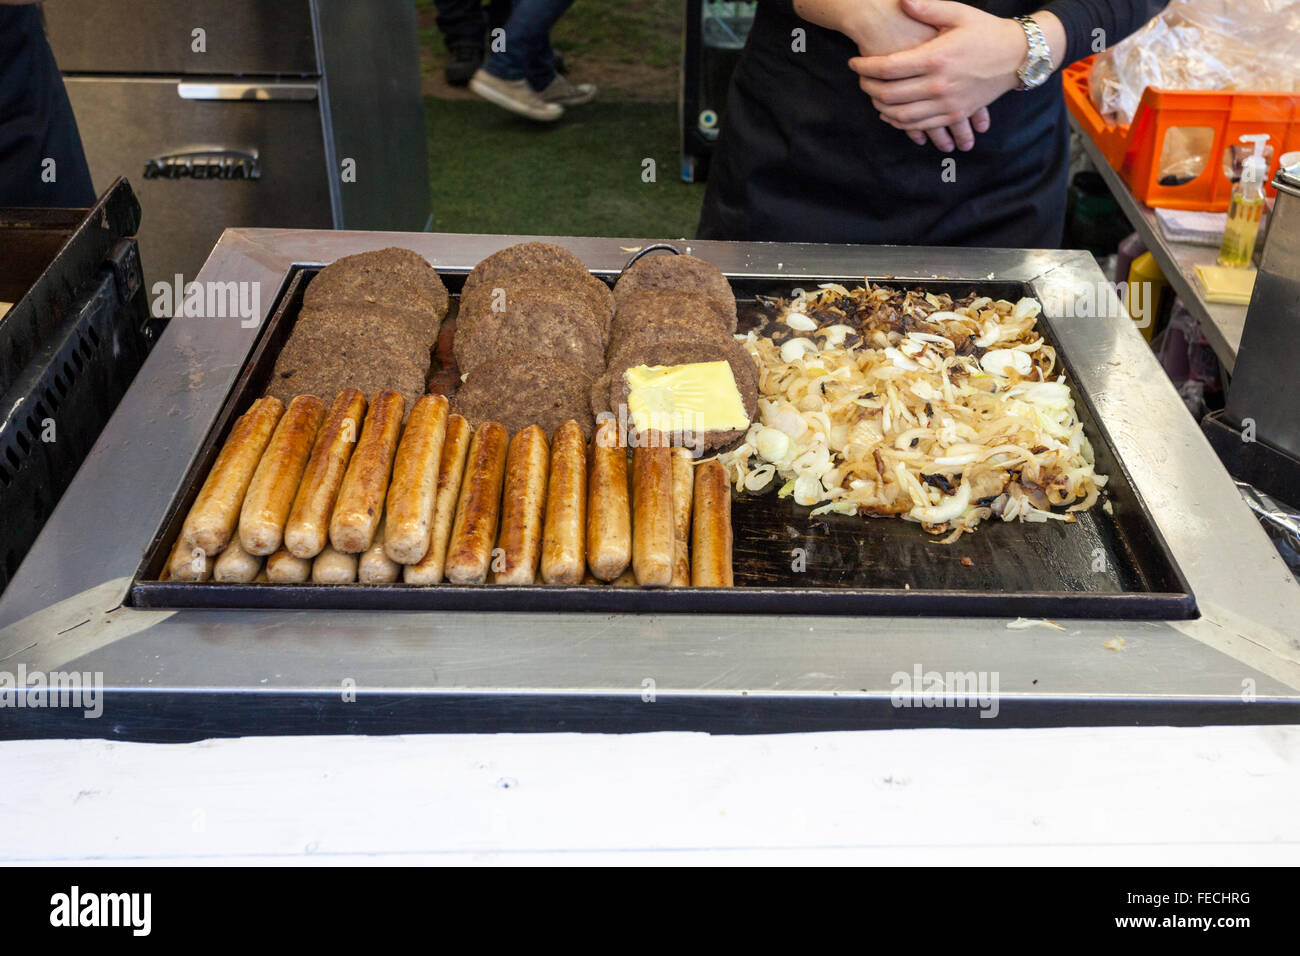 Außerhalb der Gastronomie. Hot Dog Würstchen, Hamburger und Zwiebeln kochen auf einem bratpfanne an einem Fast Food nehmen an Goose Fair, Nottingham, England, UK Abschaltdruck Stockfoto